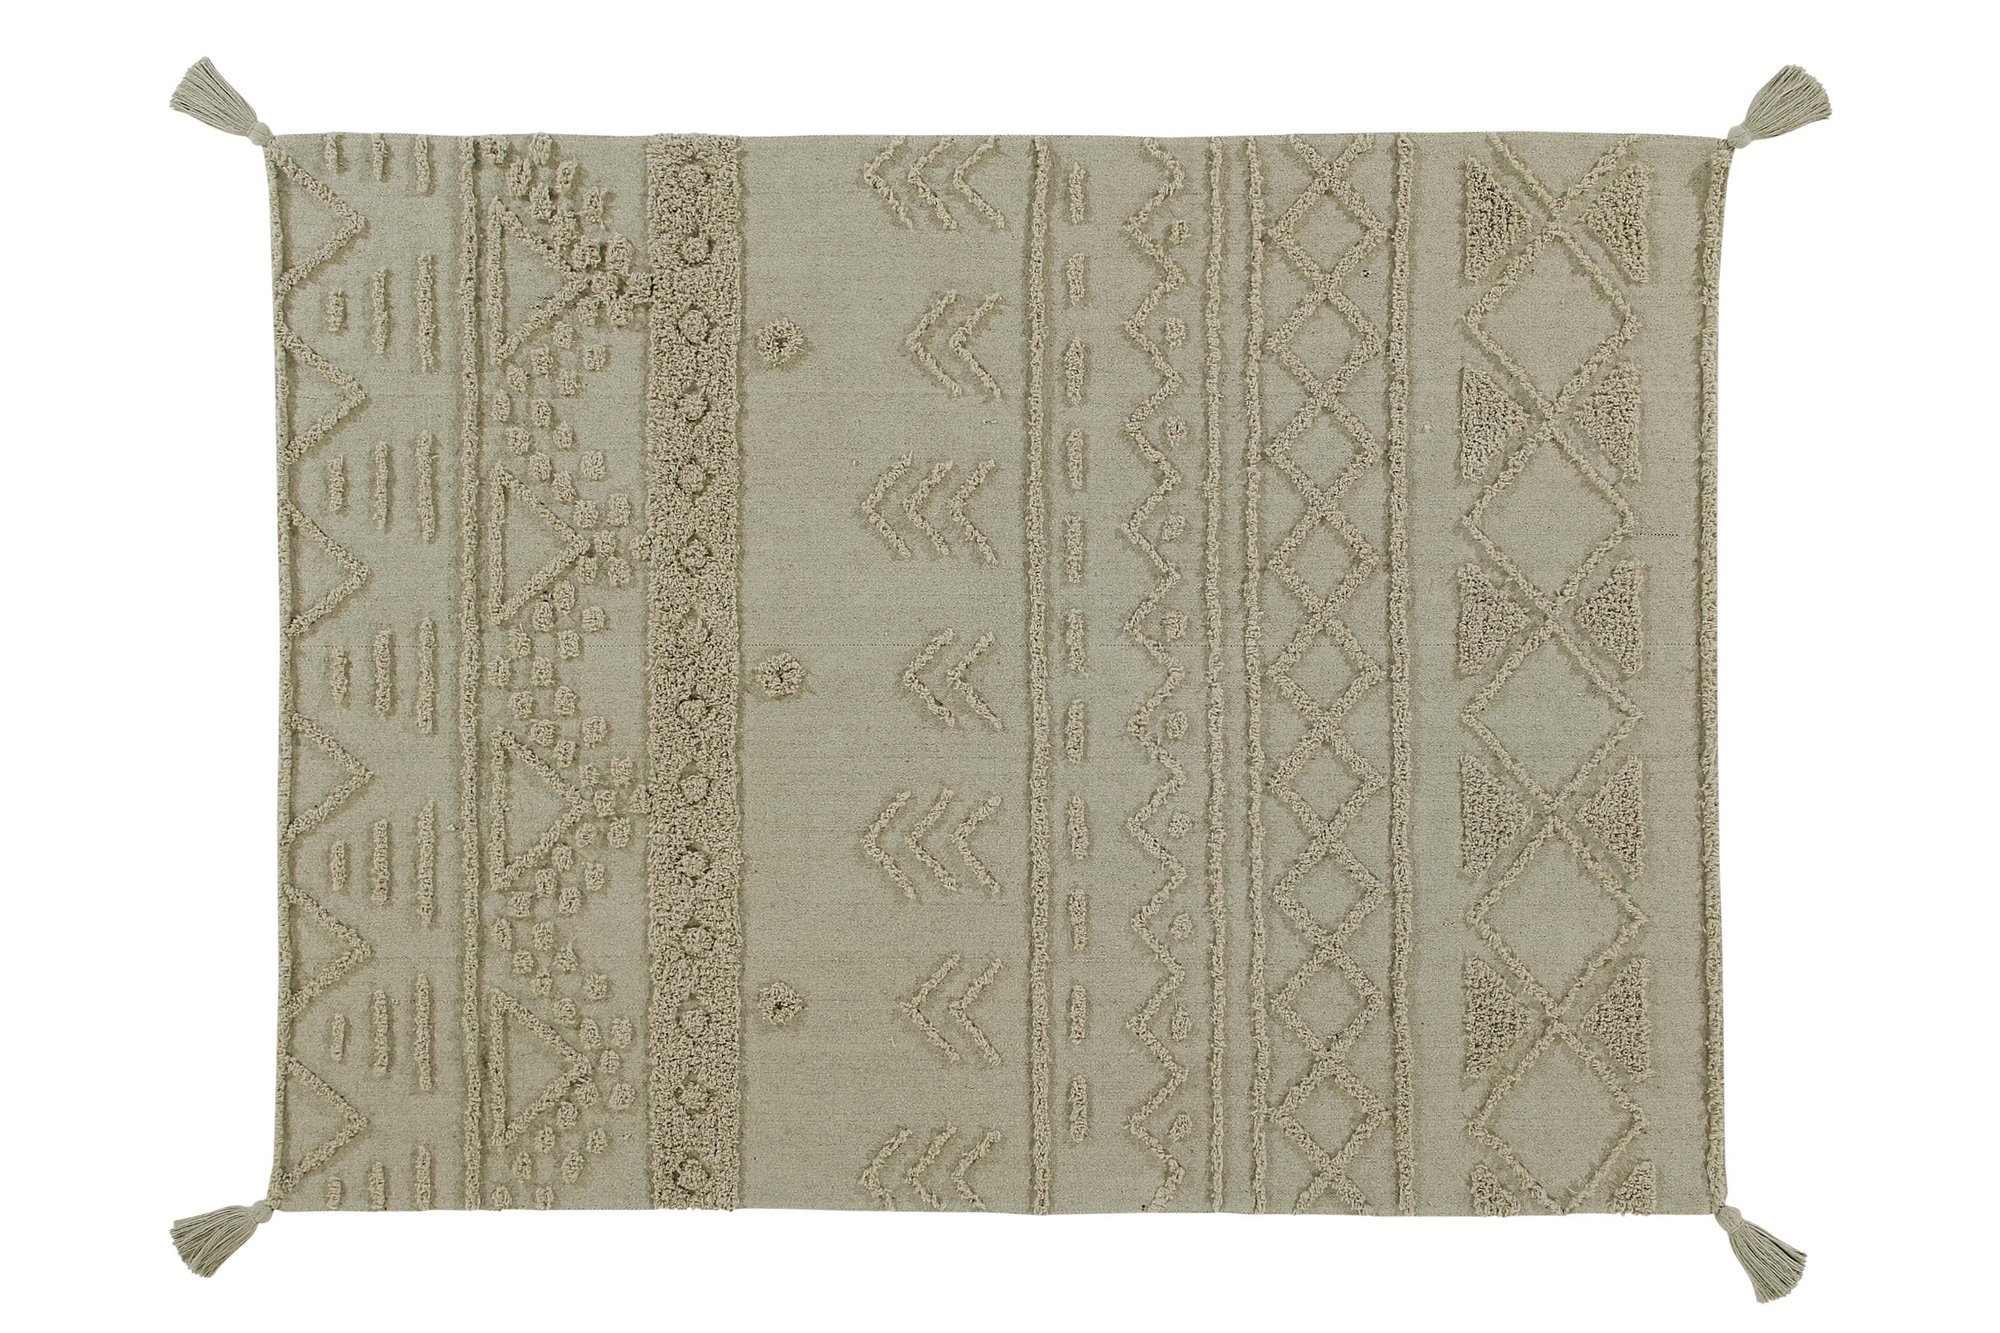 Lorena Canals alfombras coleccion Re Edition modelo Tribu